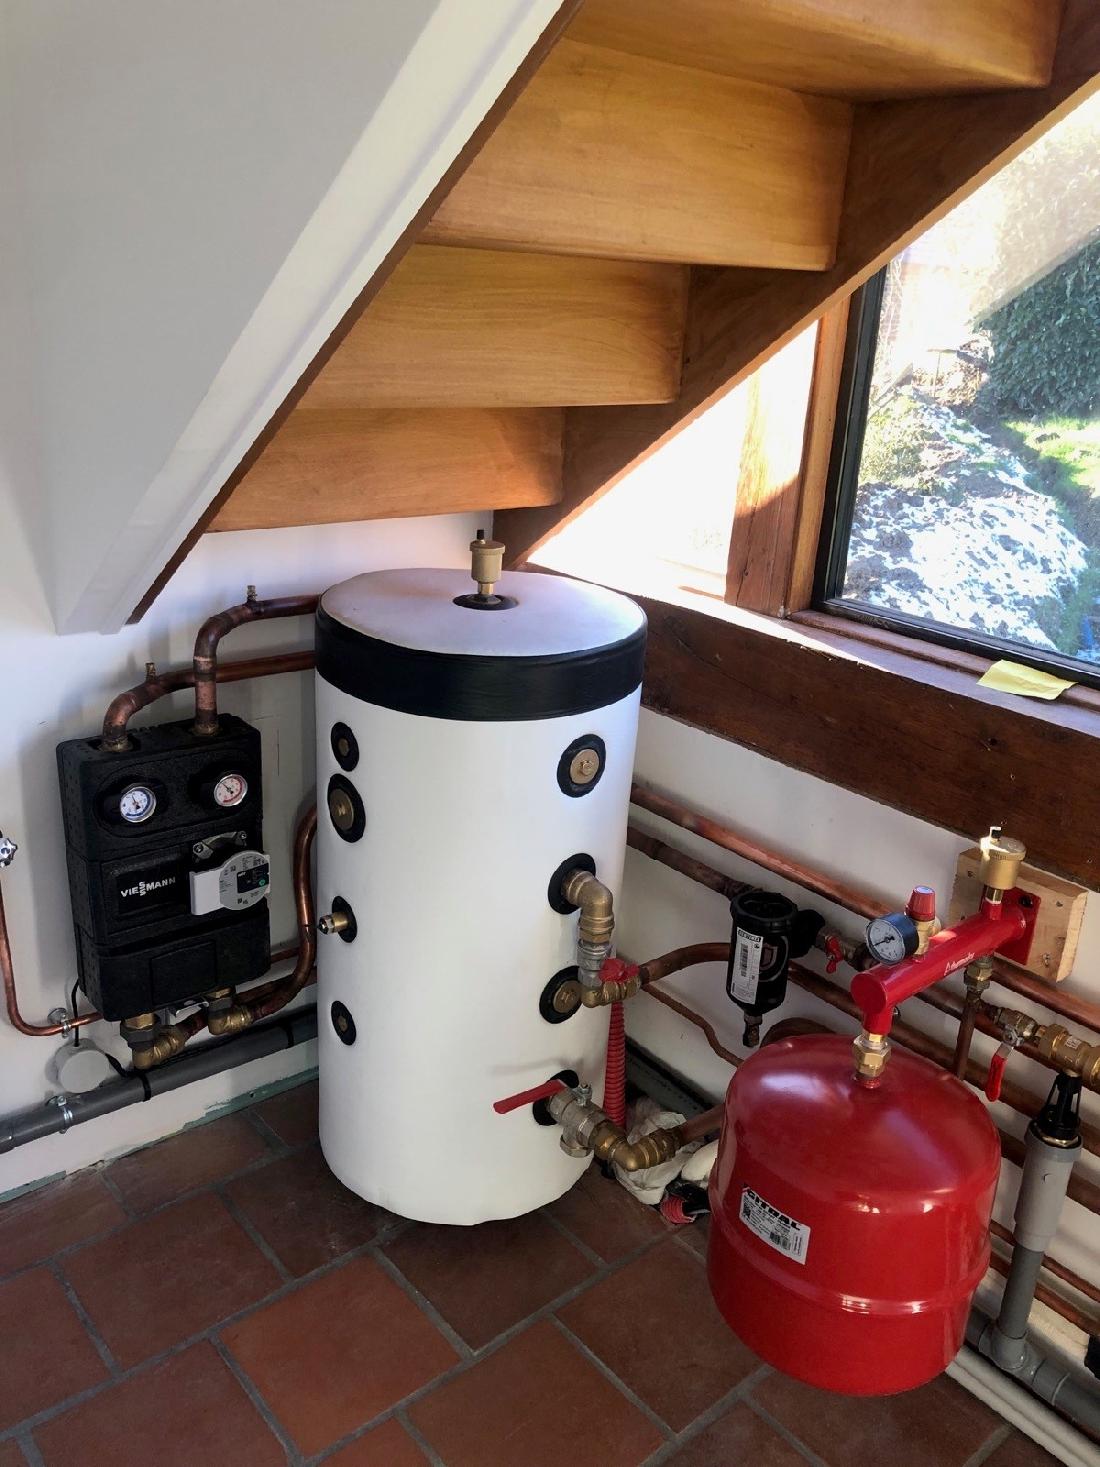 Installation d’une pompe à chaleur VIESSMANN en remplacement d’une chaudière fioul hors condensation - 27310 BOSC-BENARD-CRESCY